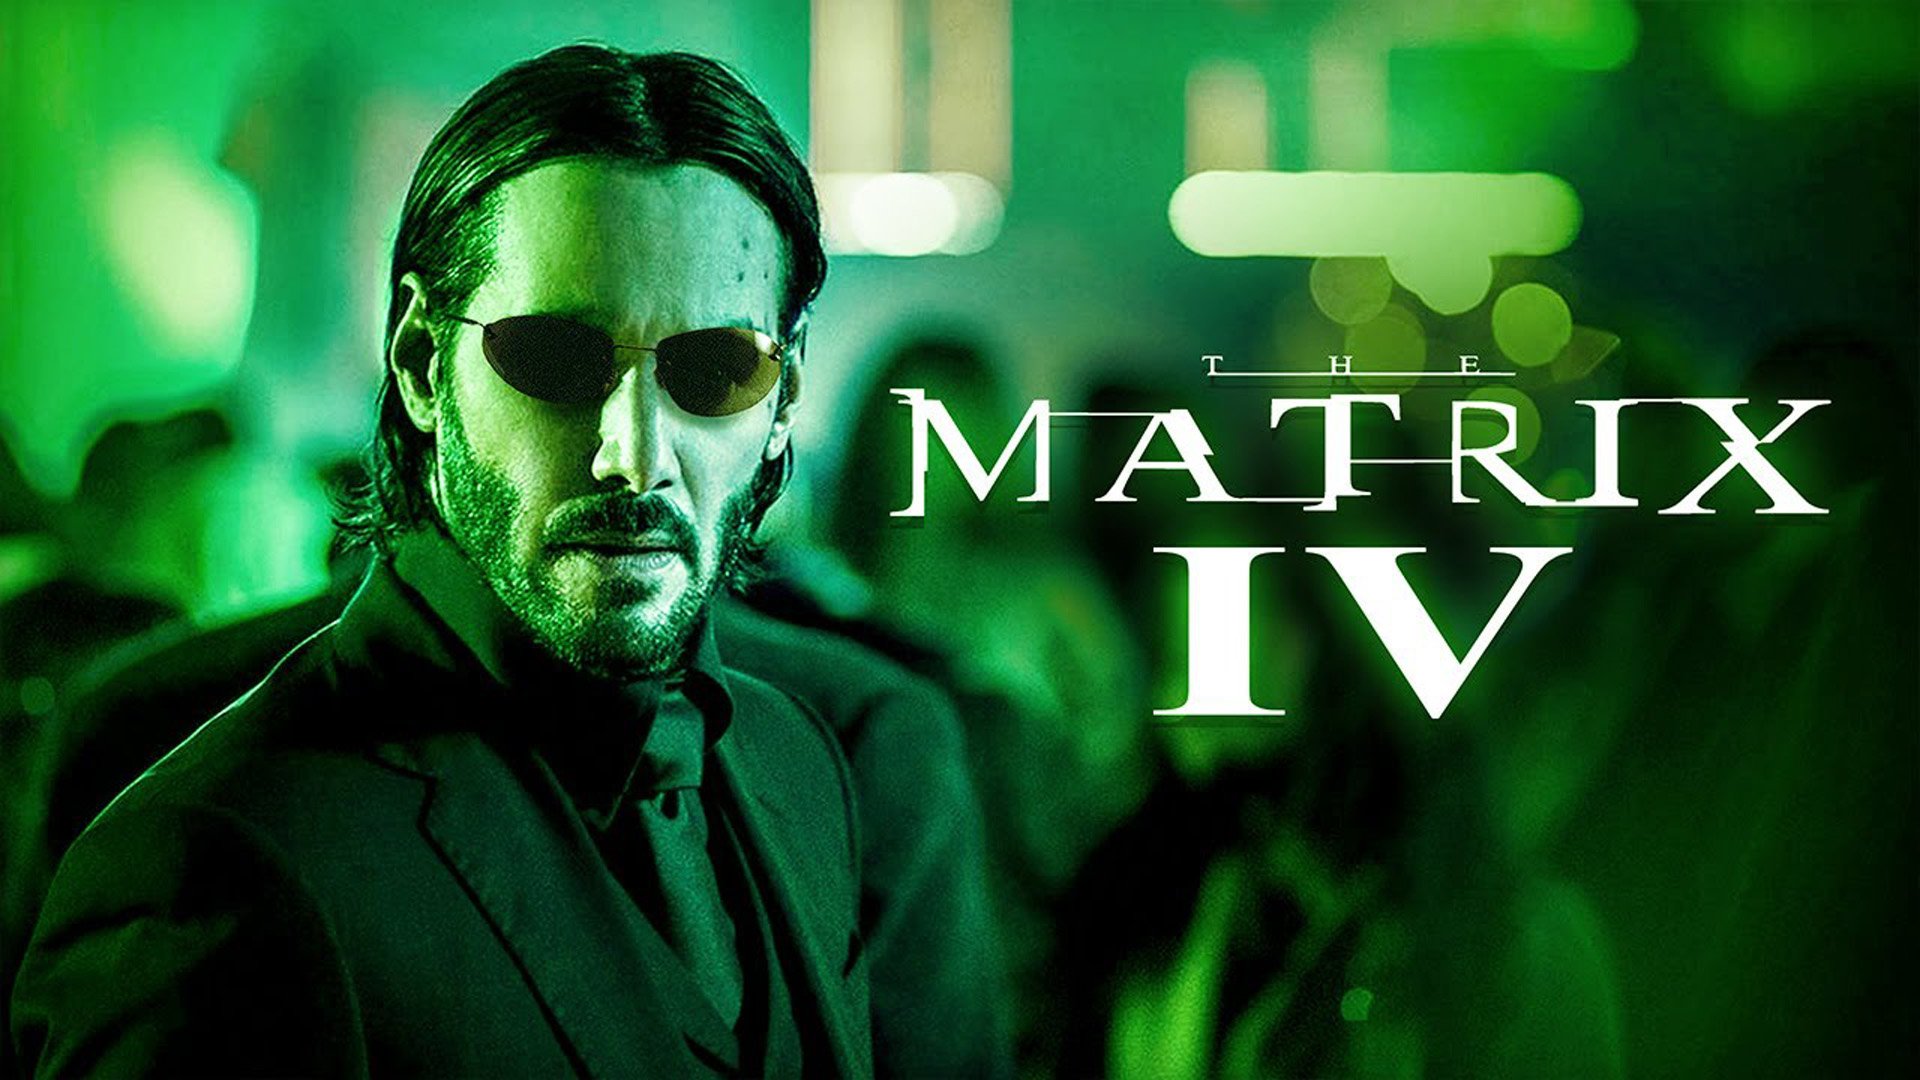 Keanu Reeves HD The Matrix 4 Wallpaper